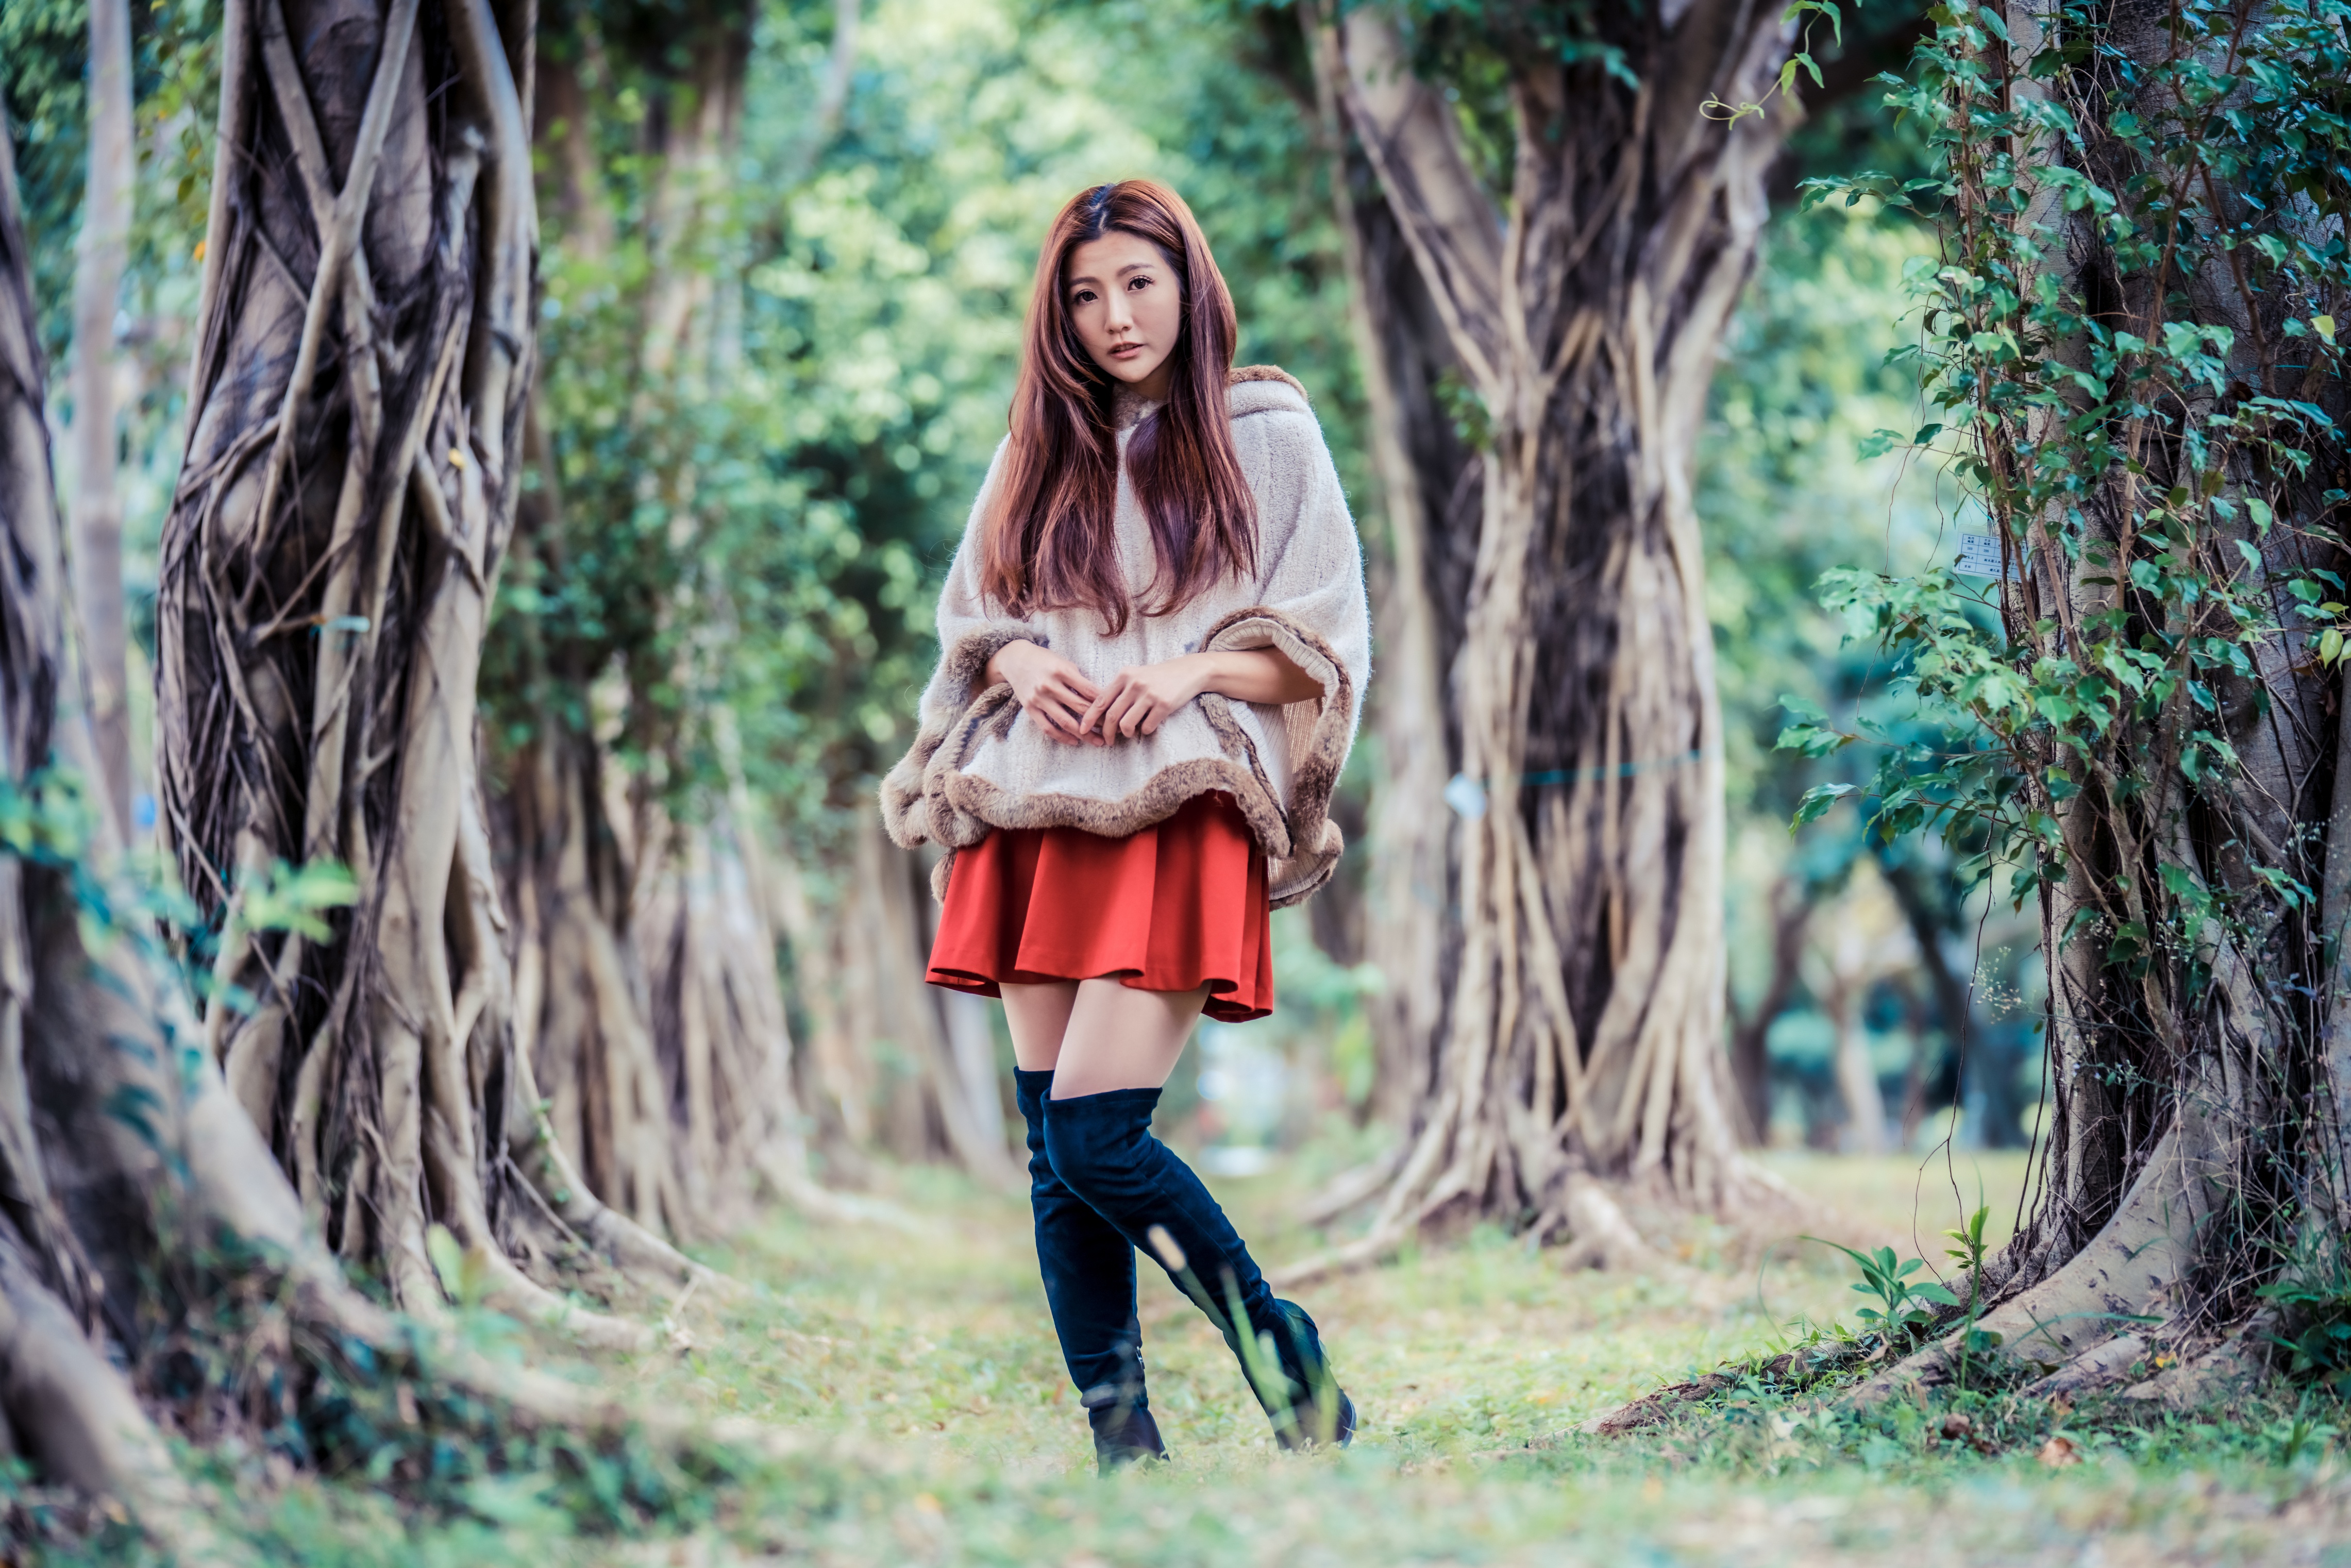 Asian Women Model Long Hair Brunette Trees Grass Knee High Boots Fur Coats Red Skirt 4562x3043